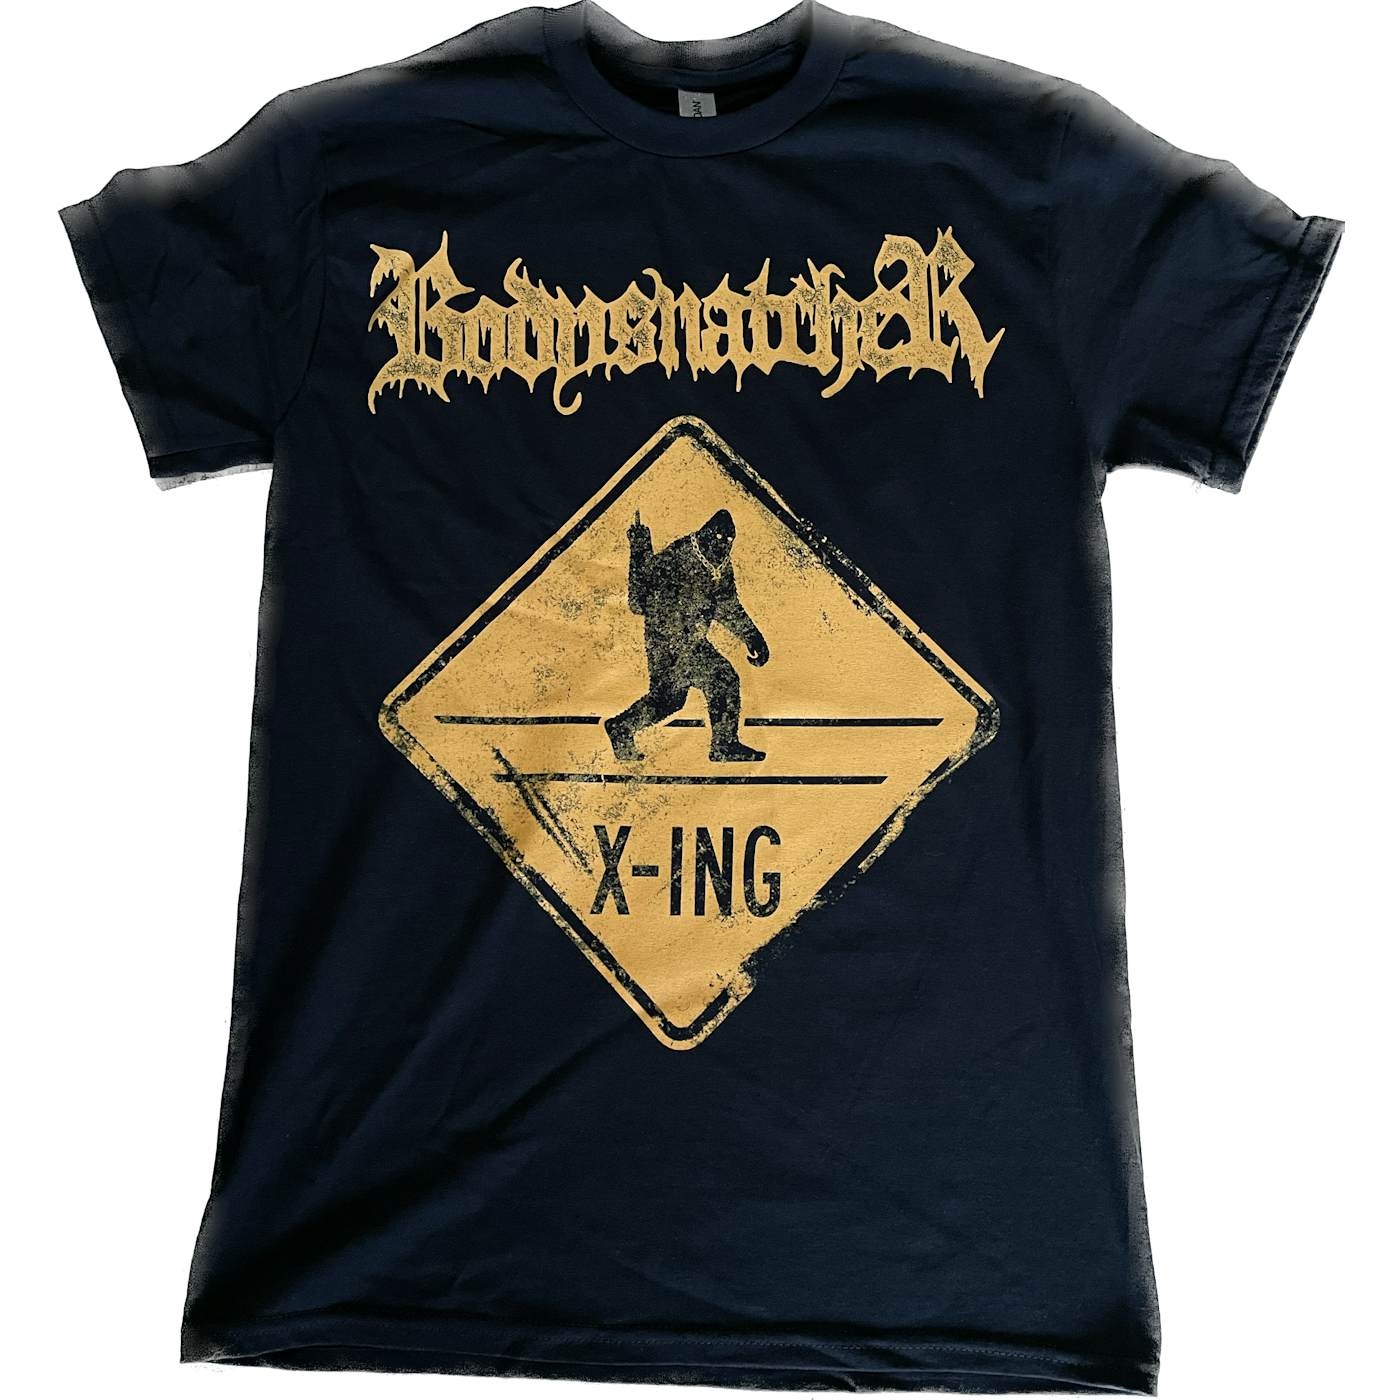 Bodysnatcher Big foot T-shirt